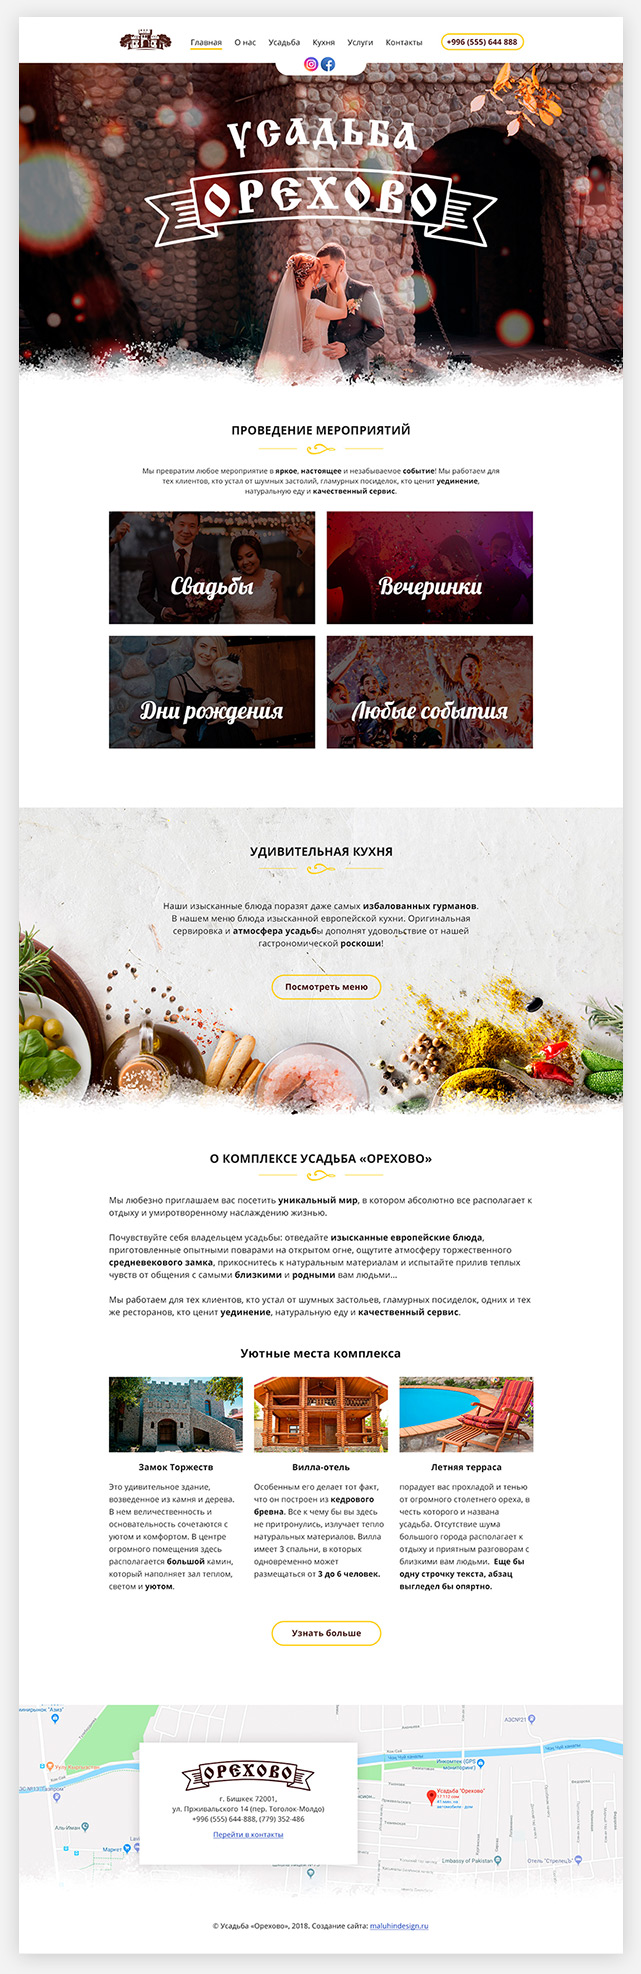 Дизайн главной страницы сайта усадьбы «Орехово»